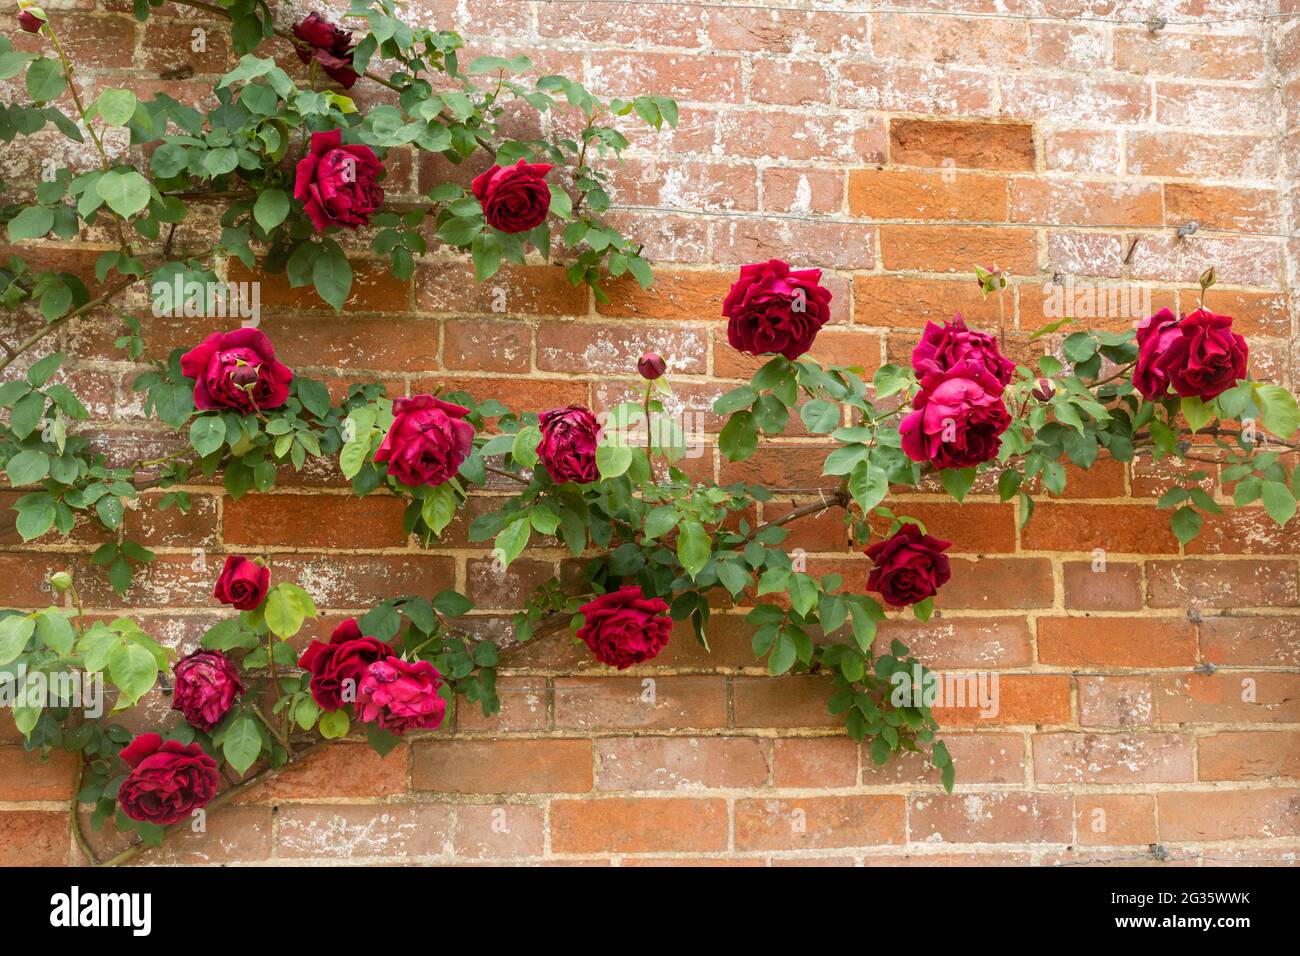 Rosa 'Crimson Glory', rosso porpora glory climbing rose crescere su una parete, Regno Unito Foto Stock